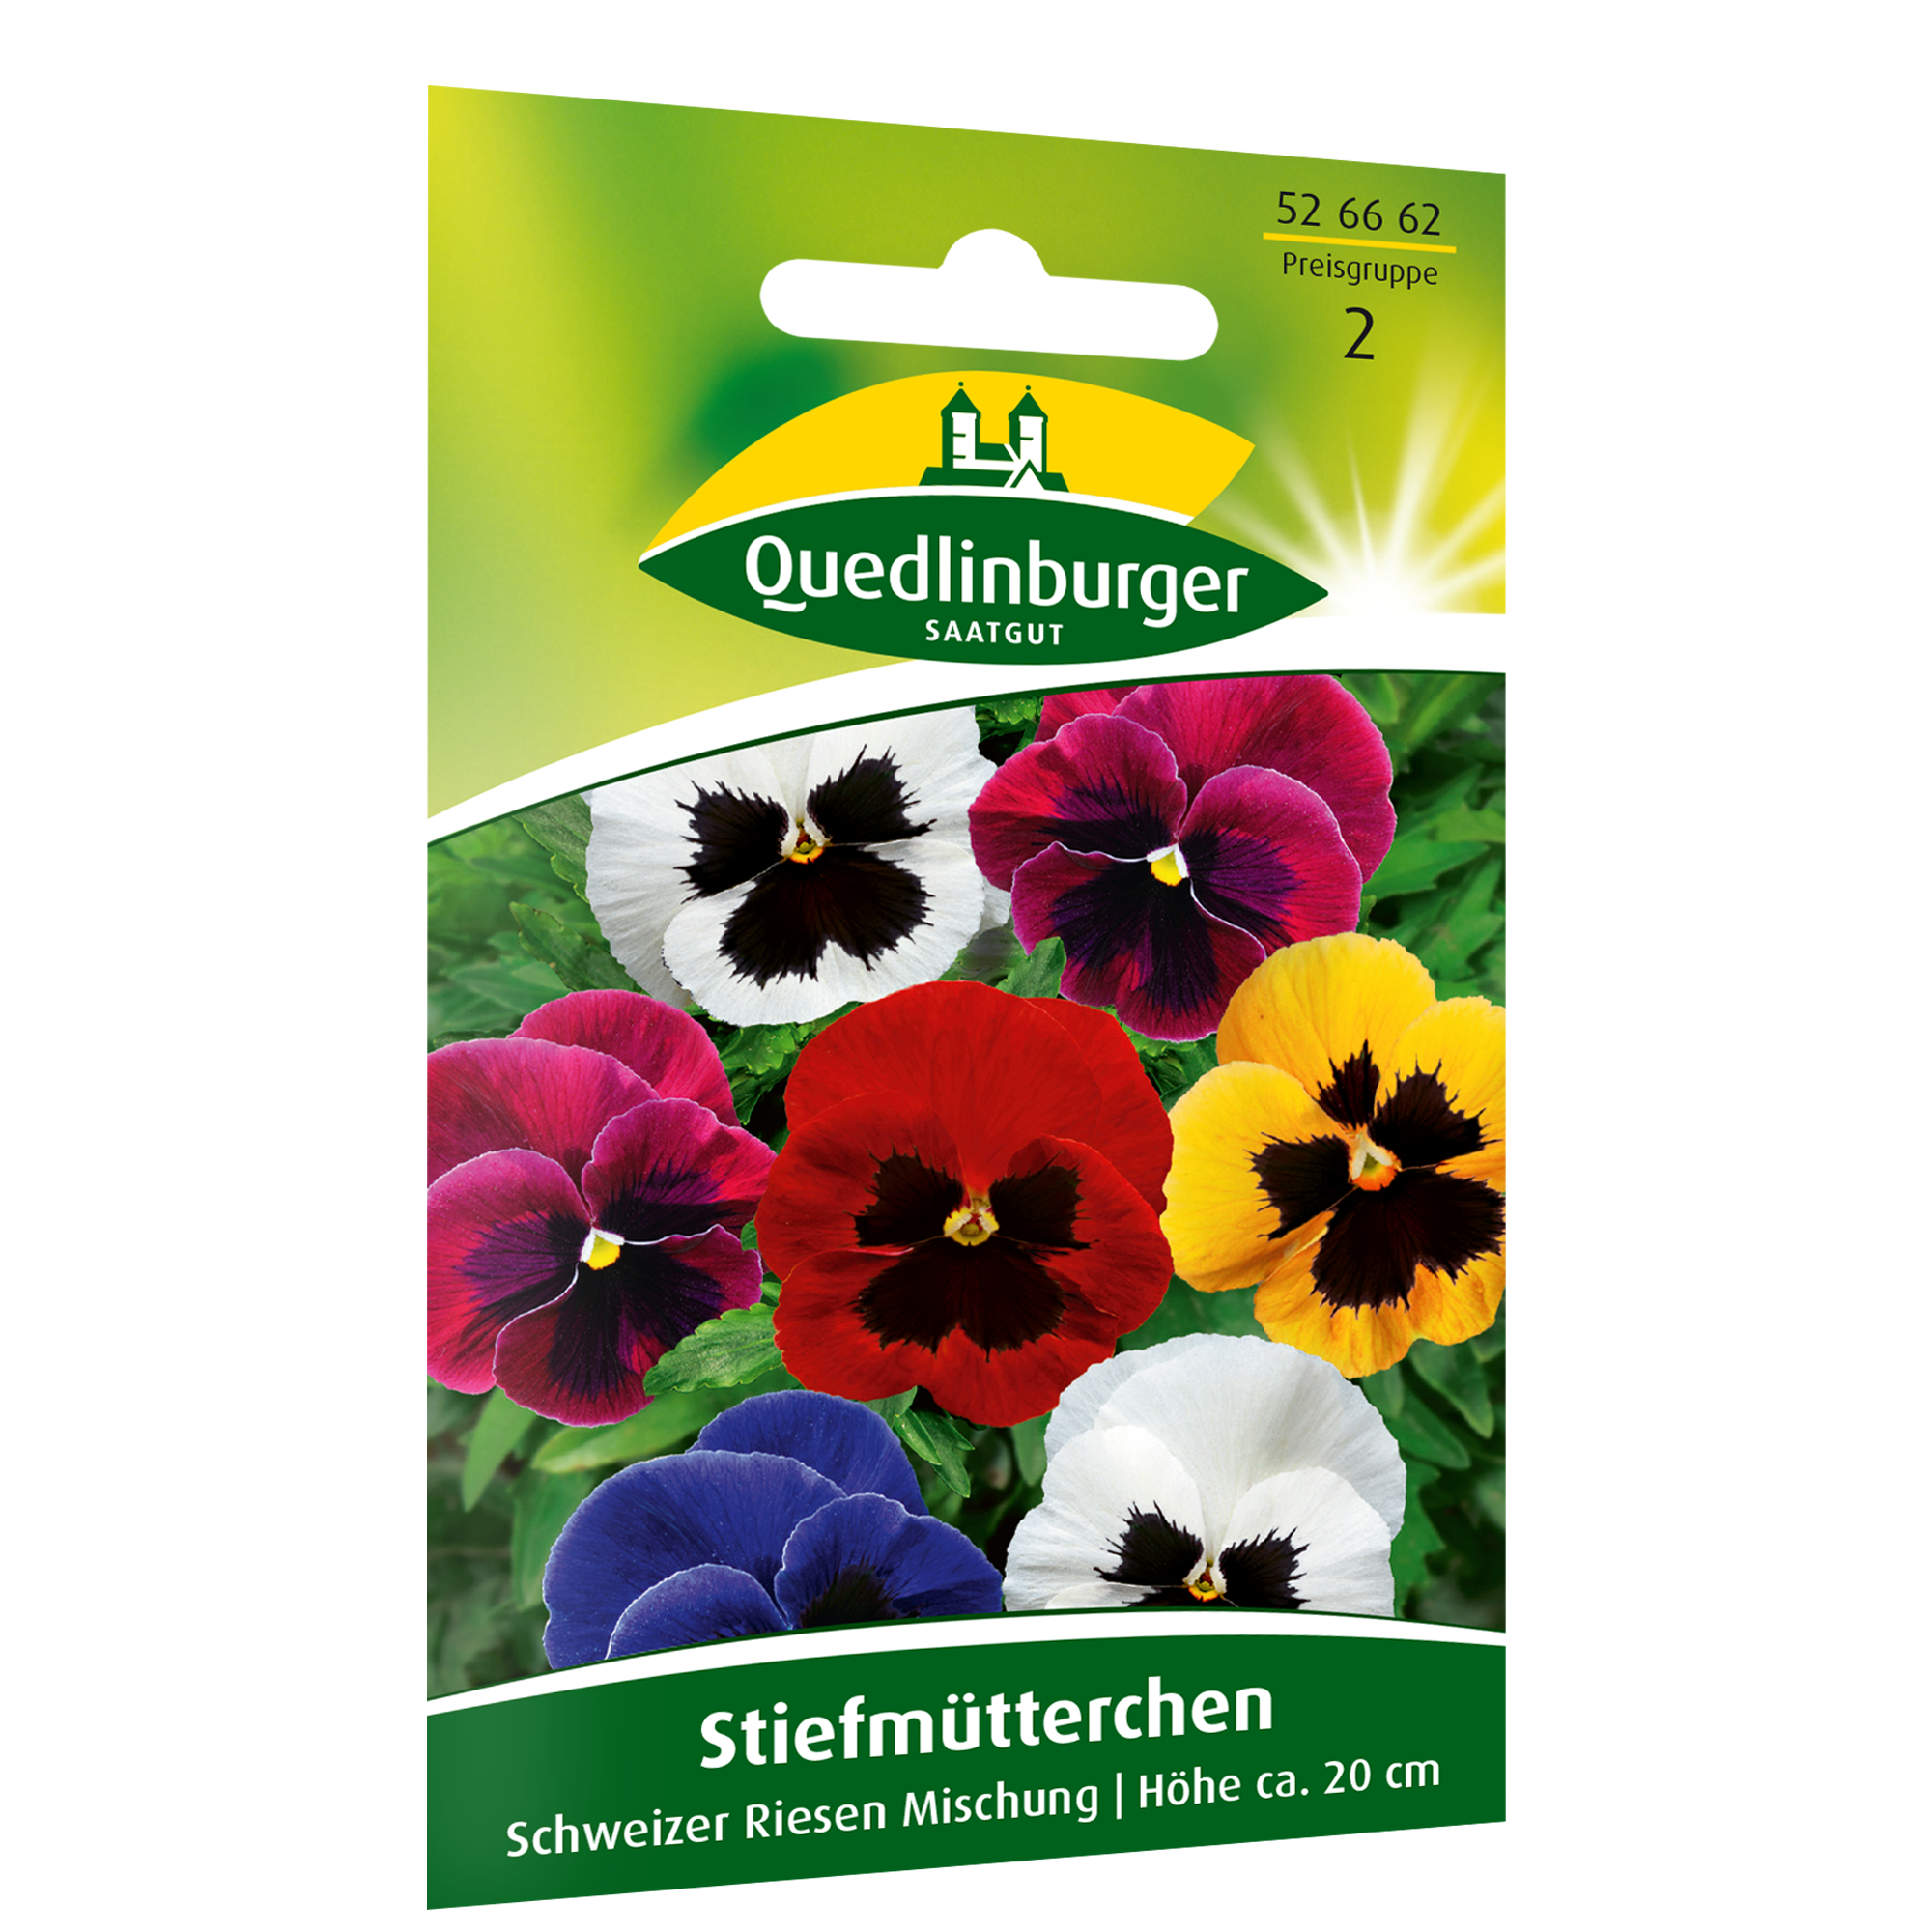 Stiefmütterchen 'Schweizer Riesen' Mischung + product picture